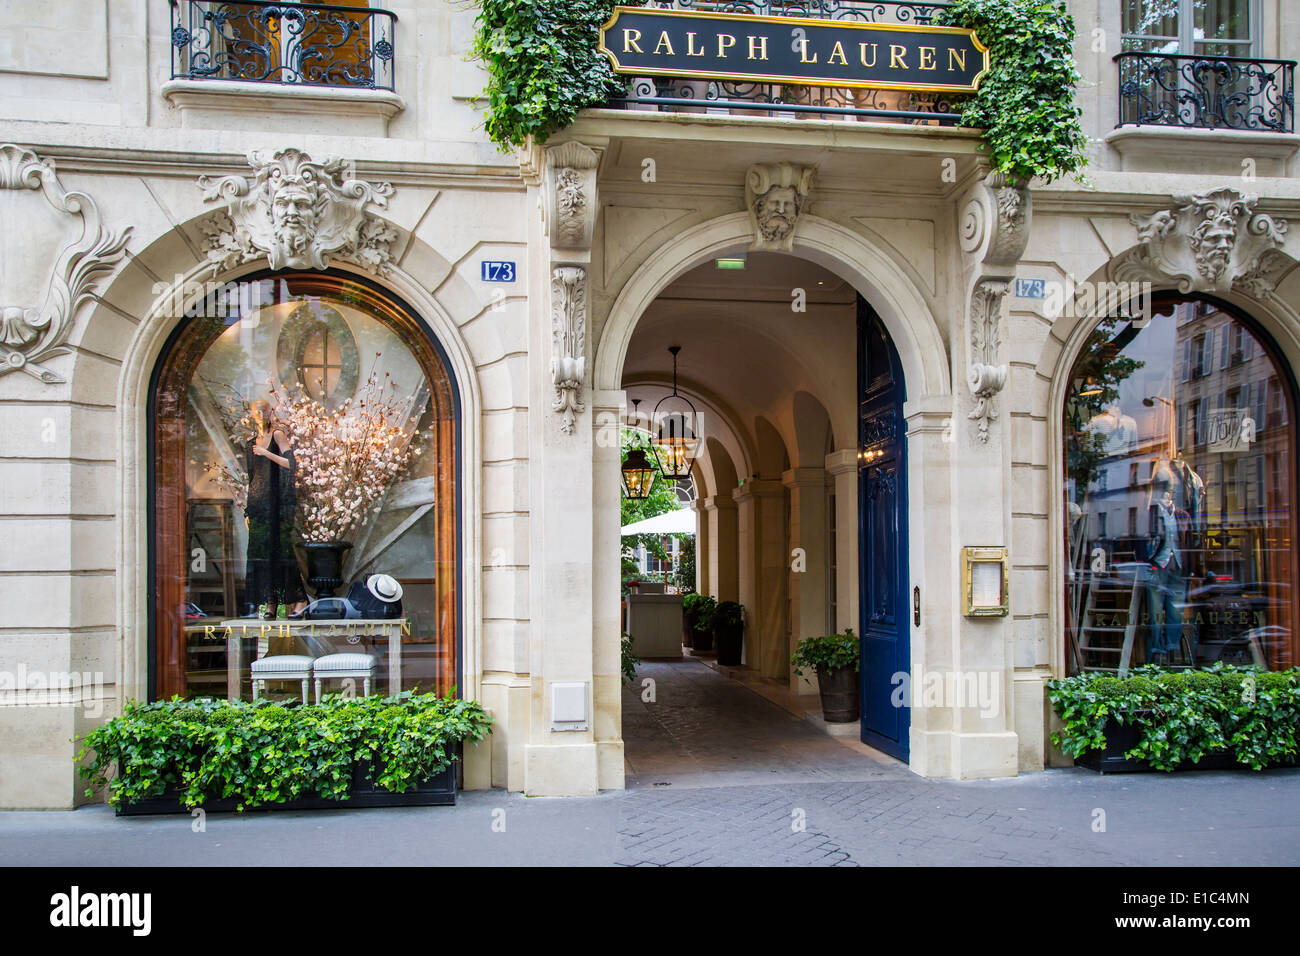 L'entrée à Ralph Lauren magasin et restaurant à Saint-Germain des Prés, Paris France Banque D'Images